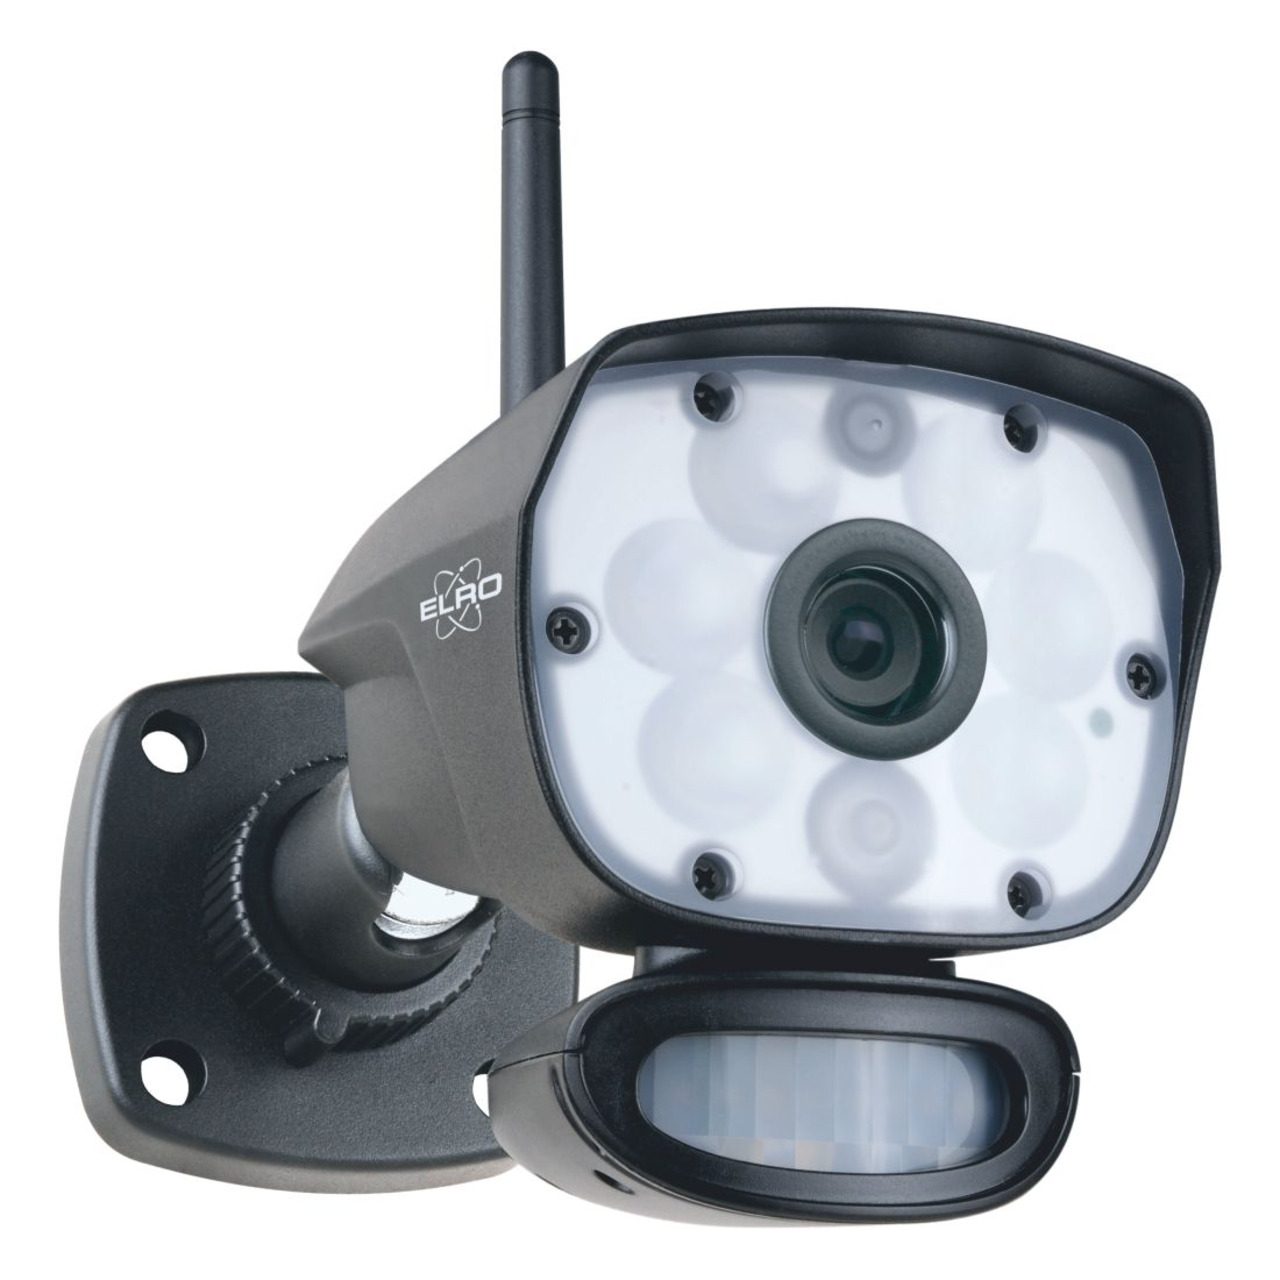 ELRO Funk-Zusatzkamera CC60RXX11- Full-HD (1080p) - geeignet für Funk-Kamerasystem CZ60RIP11S unter Sicherheitstechnik